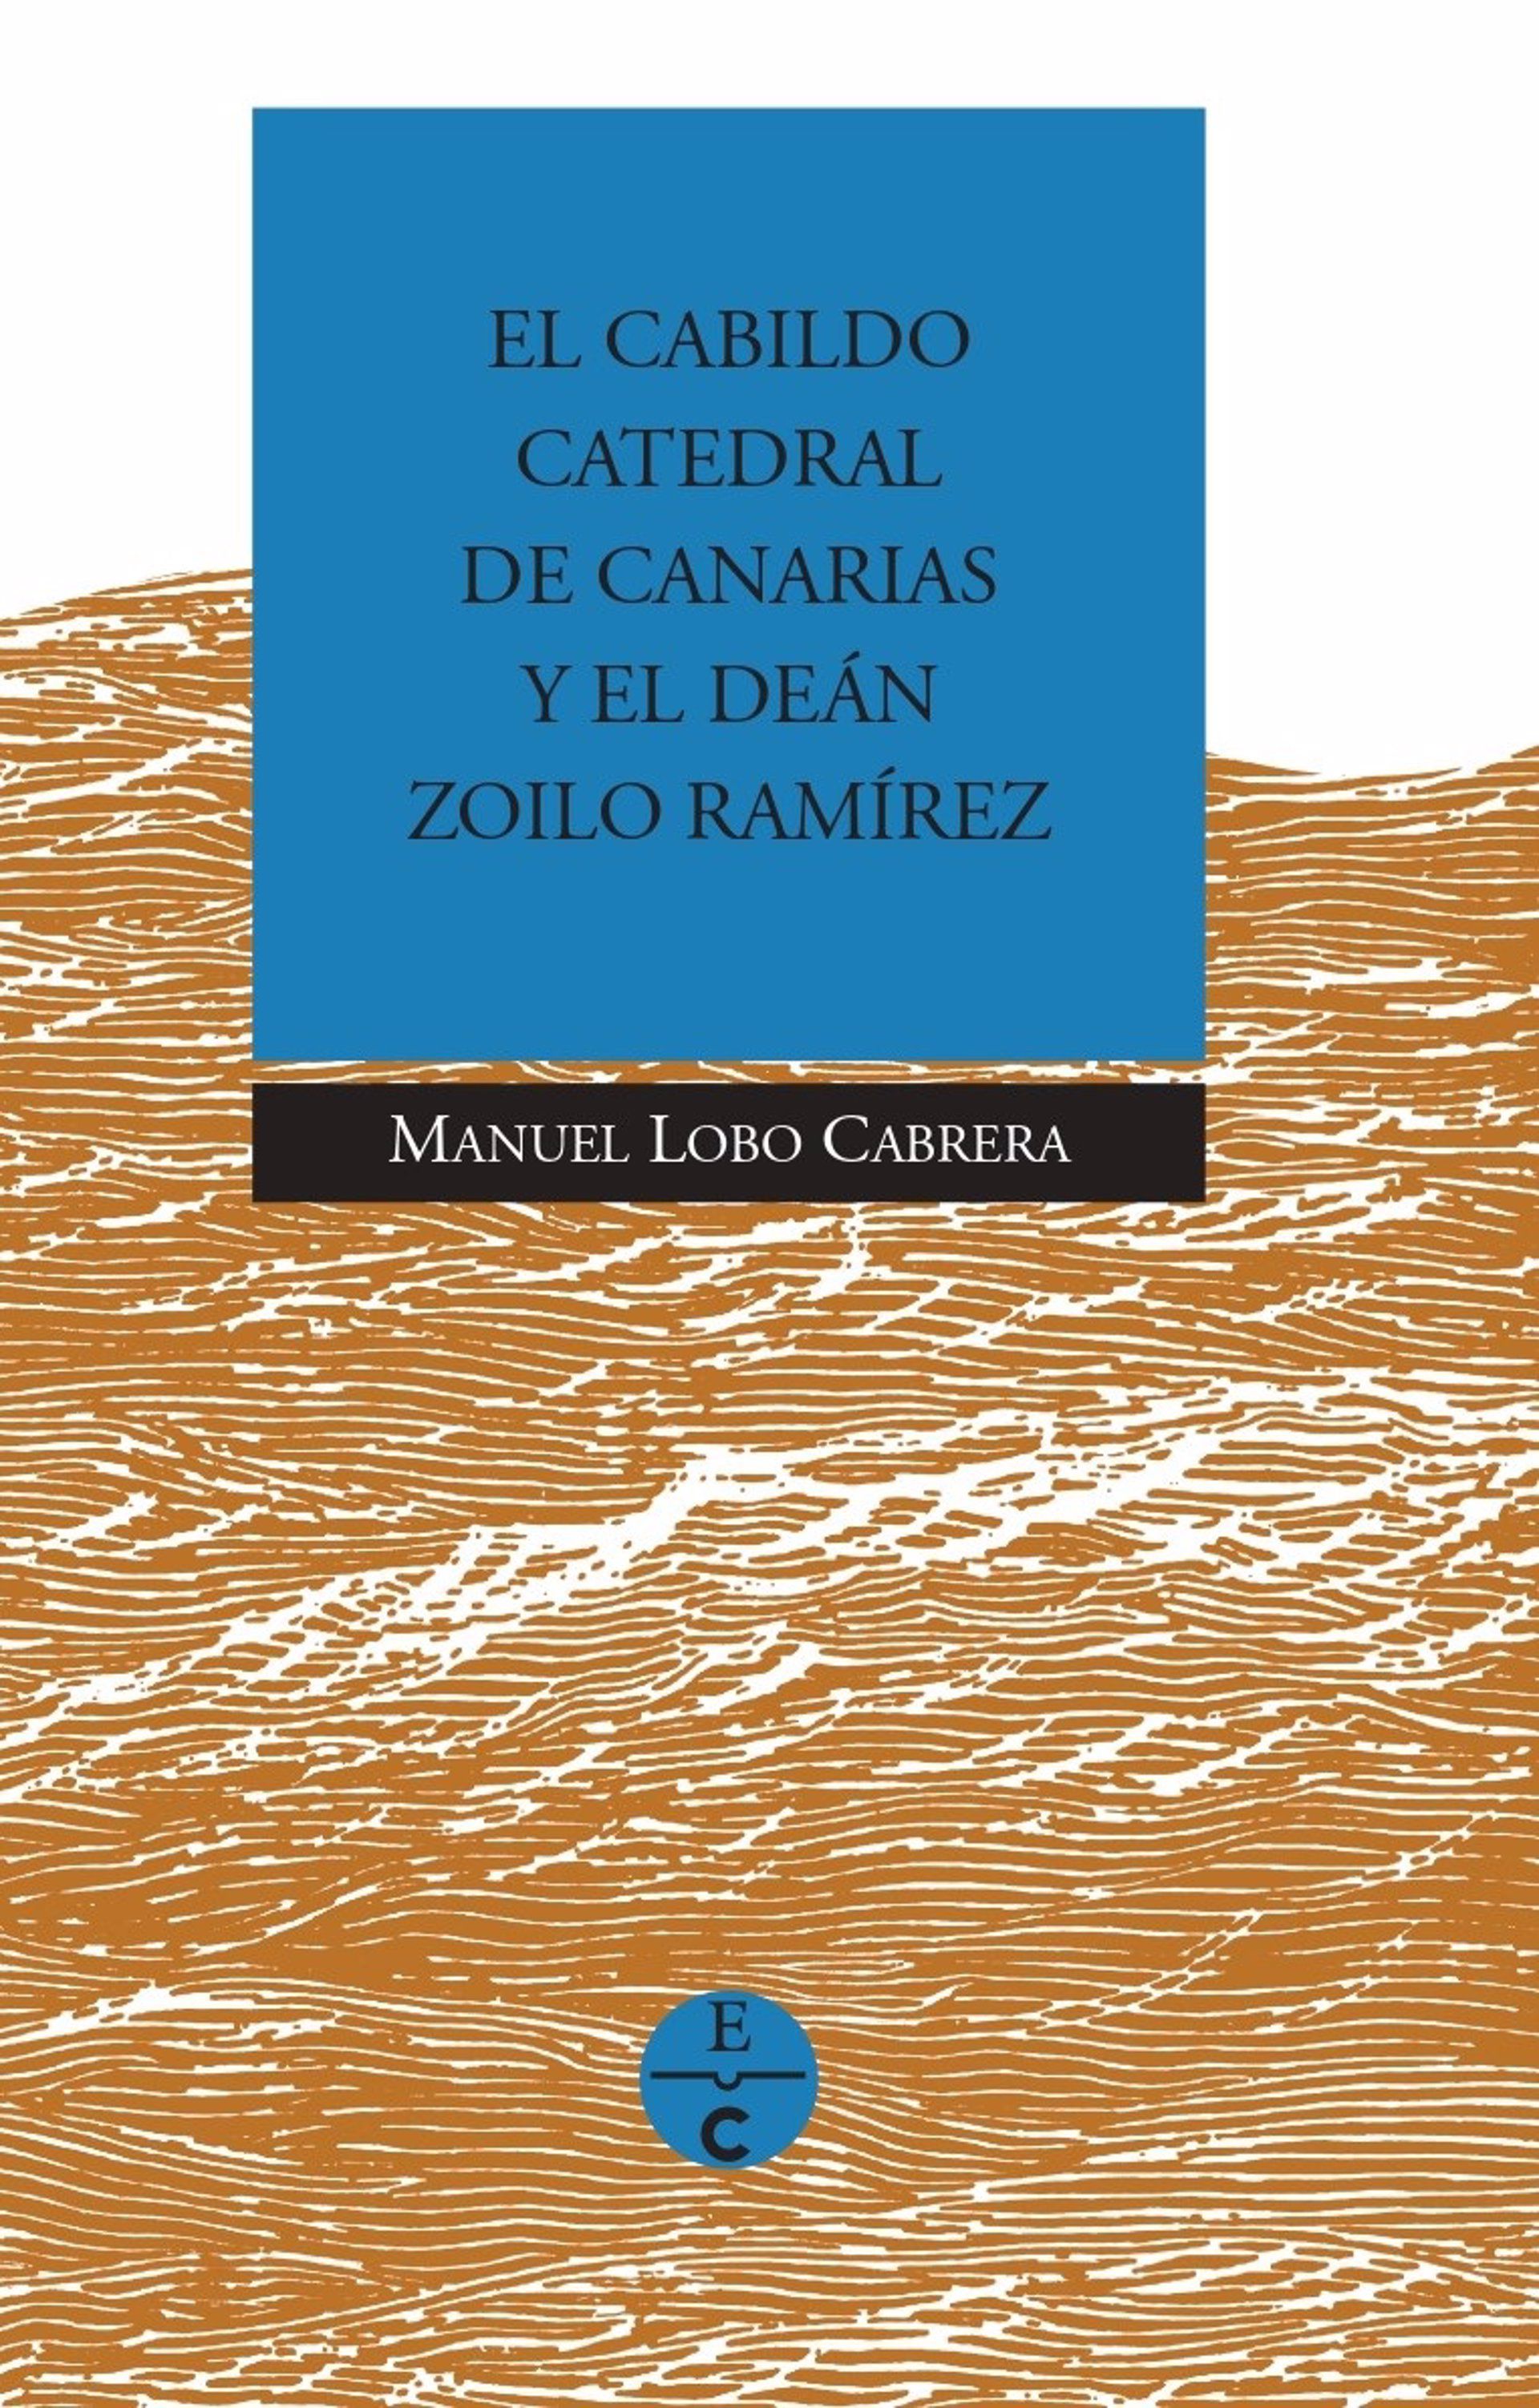 El libro 'El Cabildo Catedral de Canarias y el deán Zoilo Ramírez' de Manuel Lobo se presenta el miércoles